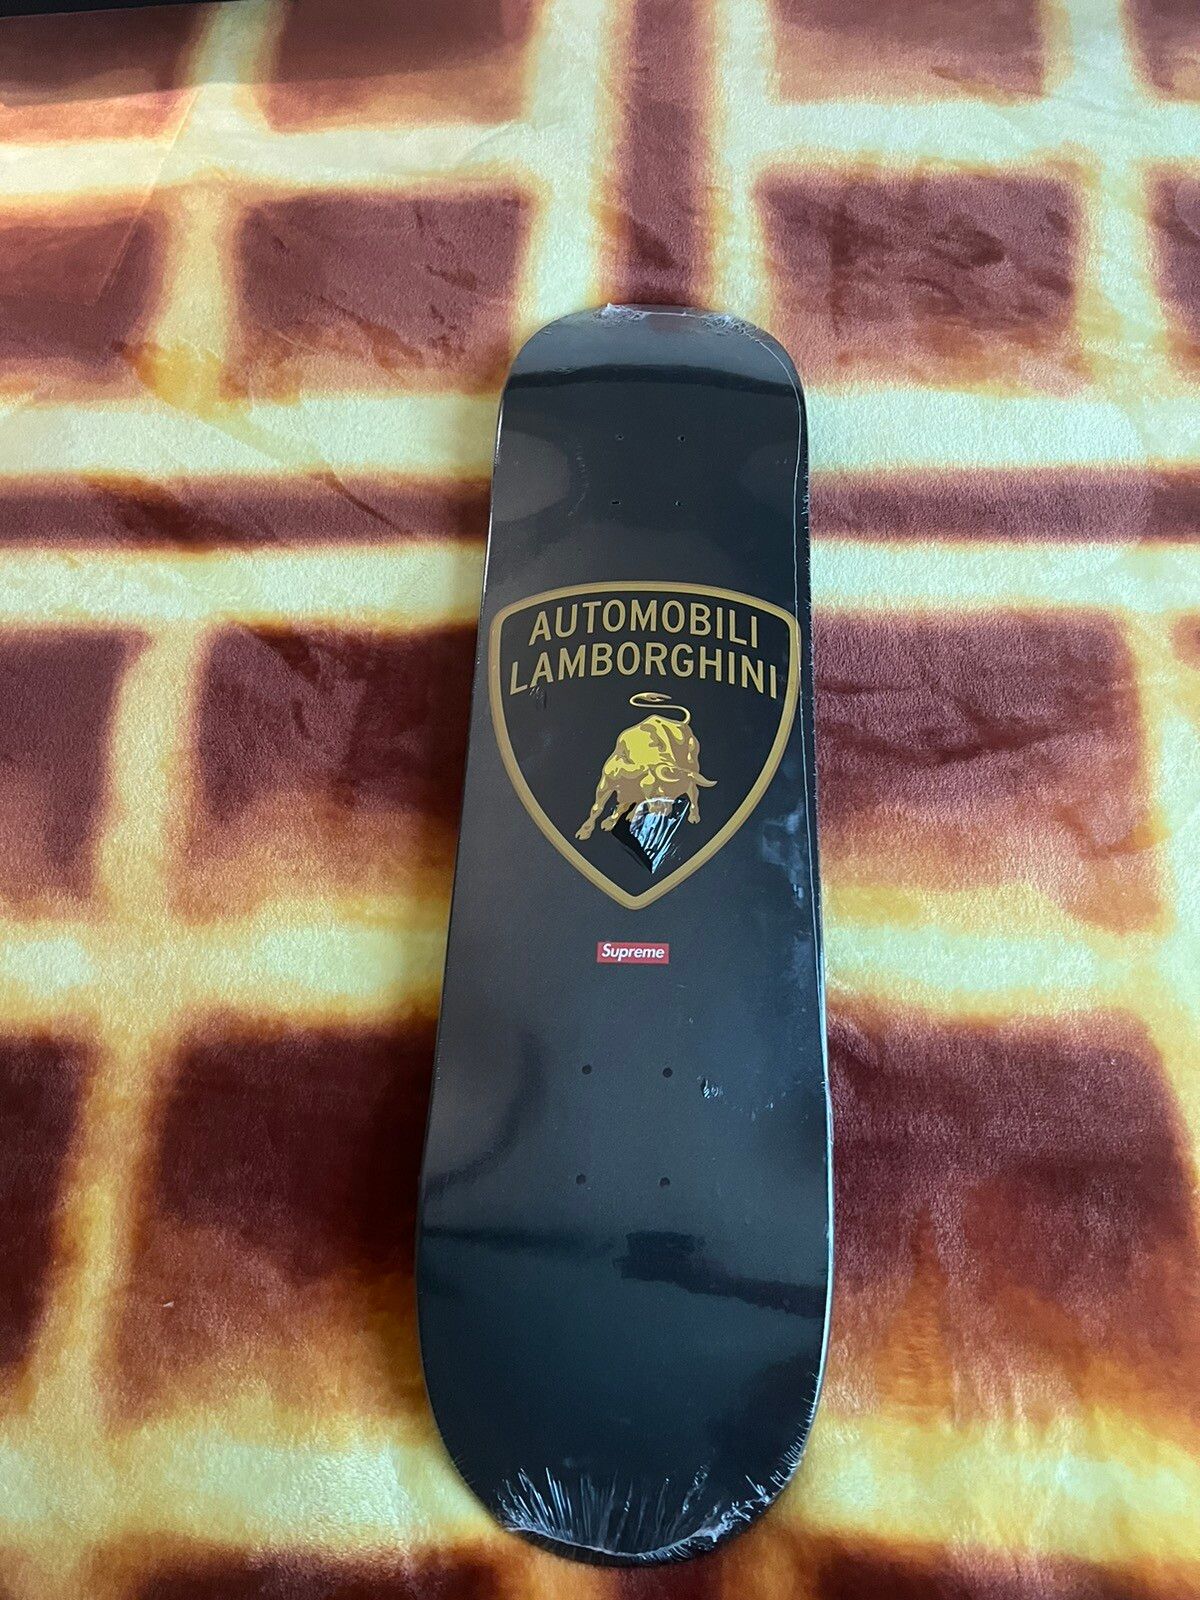 Supreme Supreme Automobili Lamborghini Skateboard Deck Black | Grailed